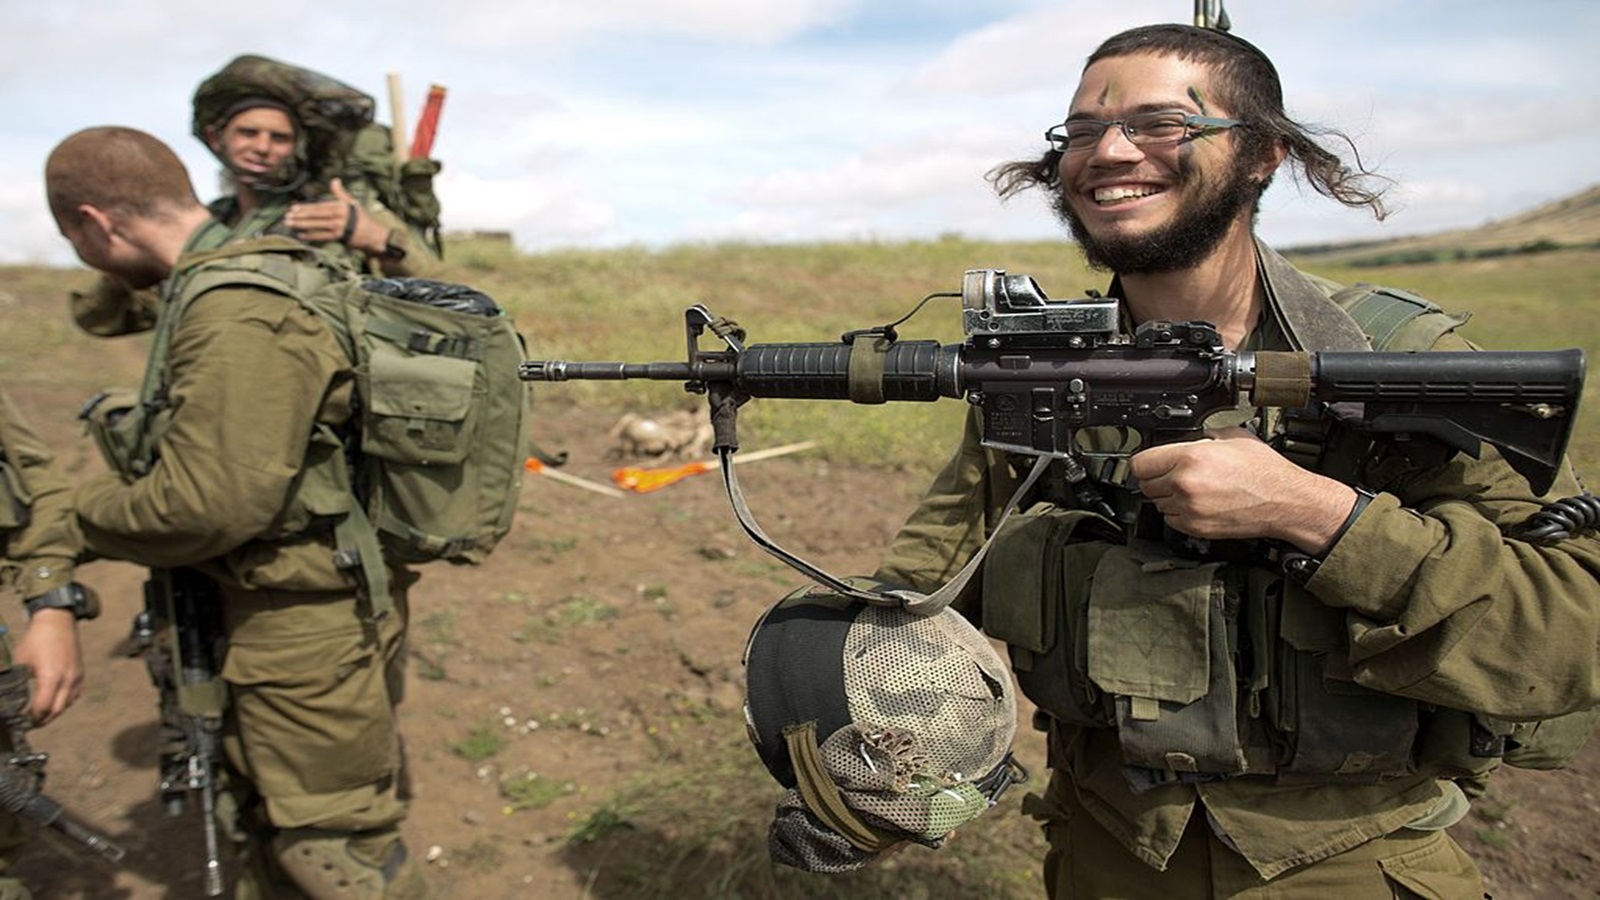 واشنطن لن تعاقب كتائب الجيش الإسرائيلي..رغم "الانتهاكات الجسيمة"